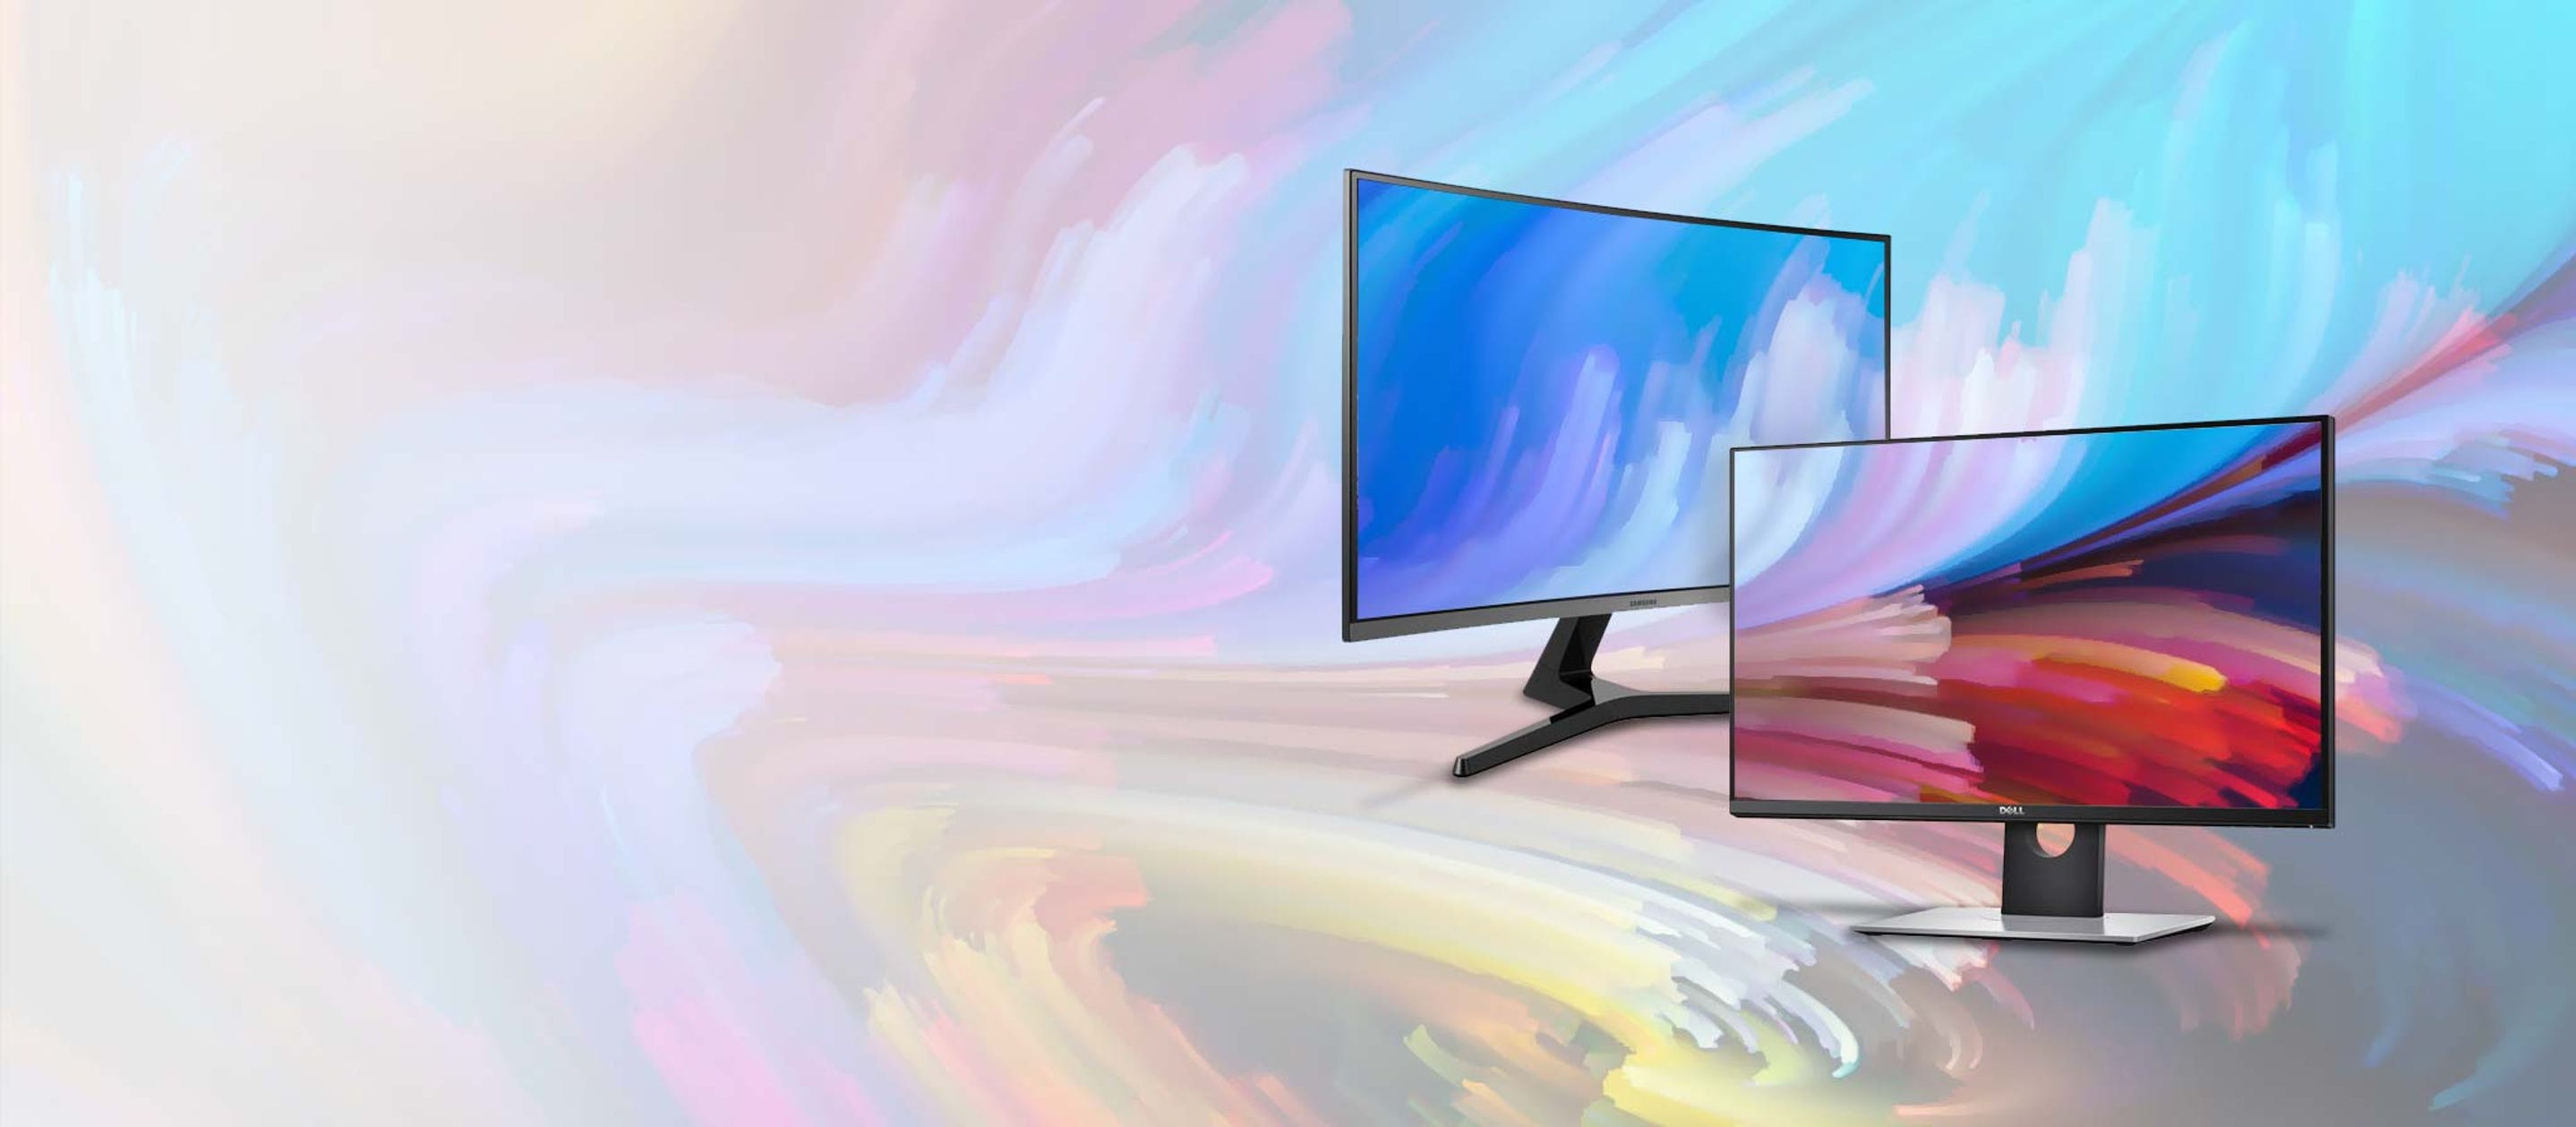 Devriez vous acheter écrans d'ordinateur ou un seul très grand écran? -  Blogue Best Buy